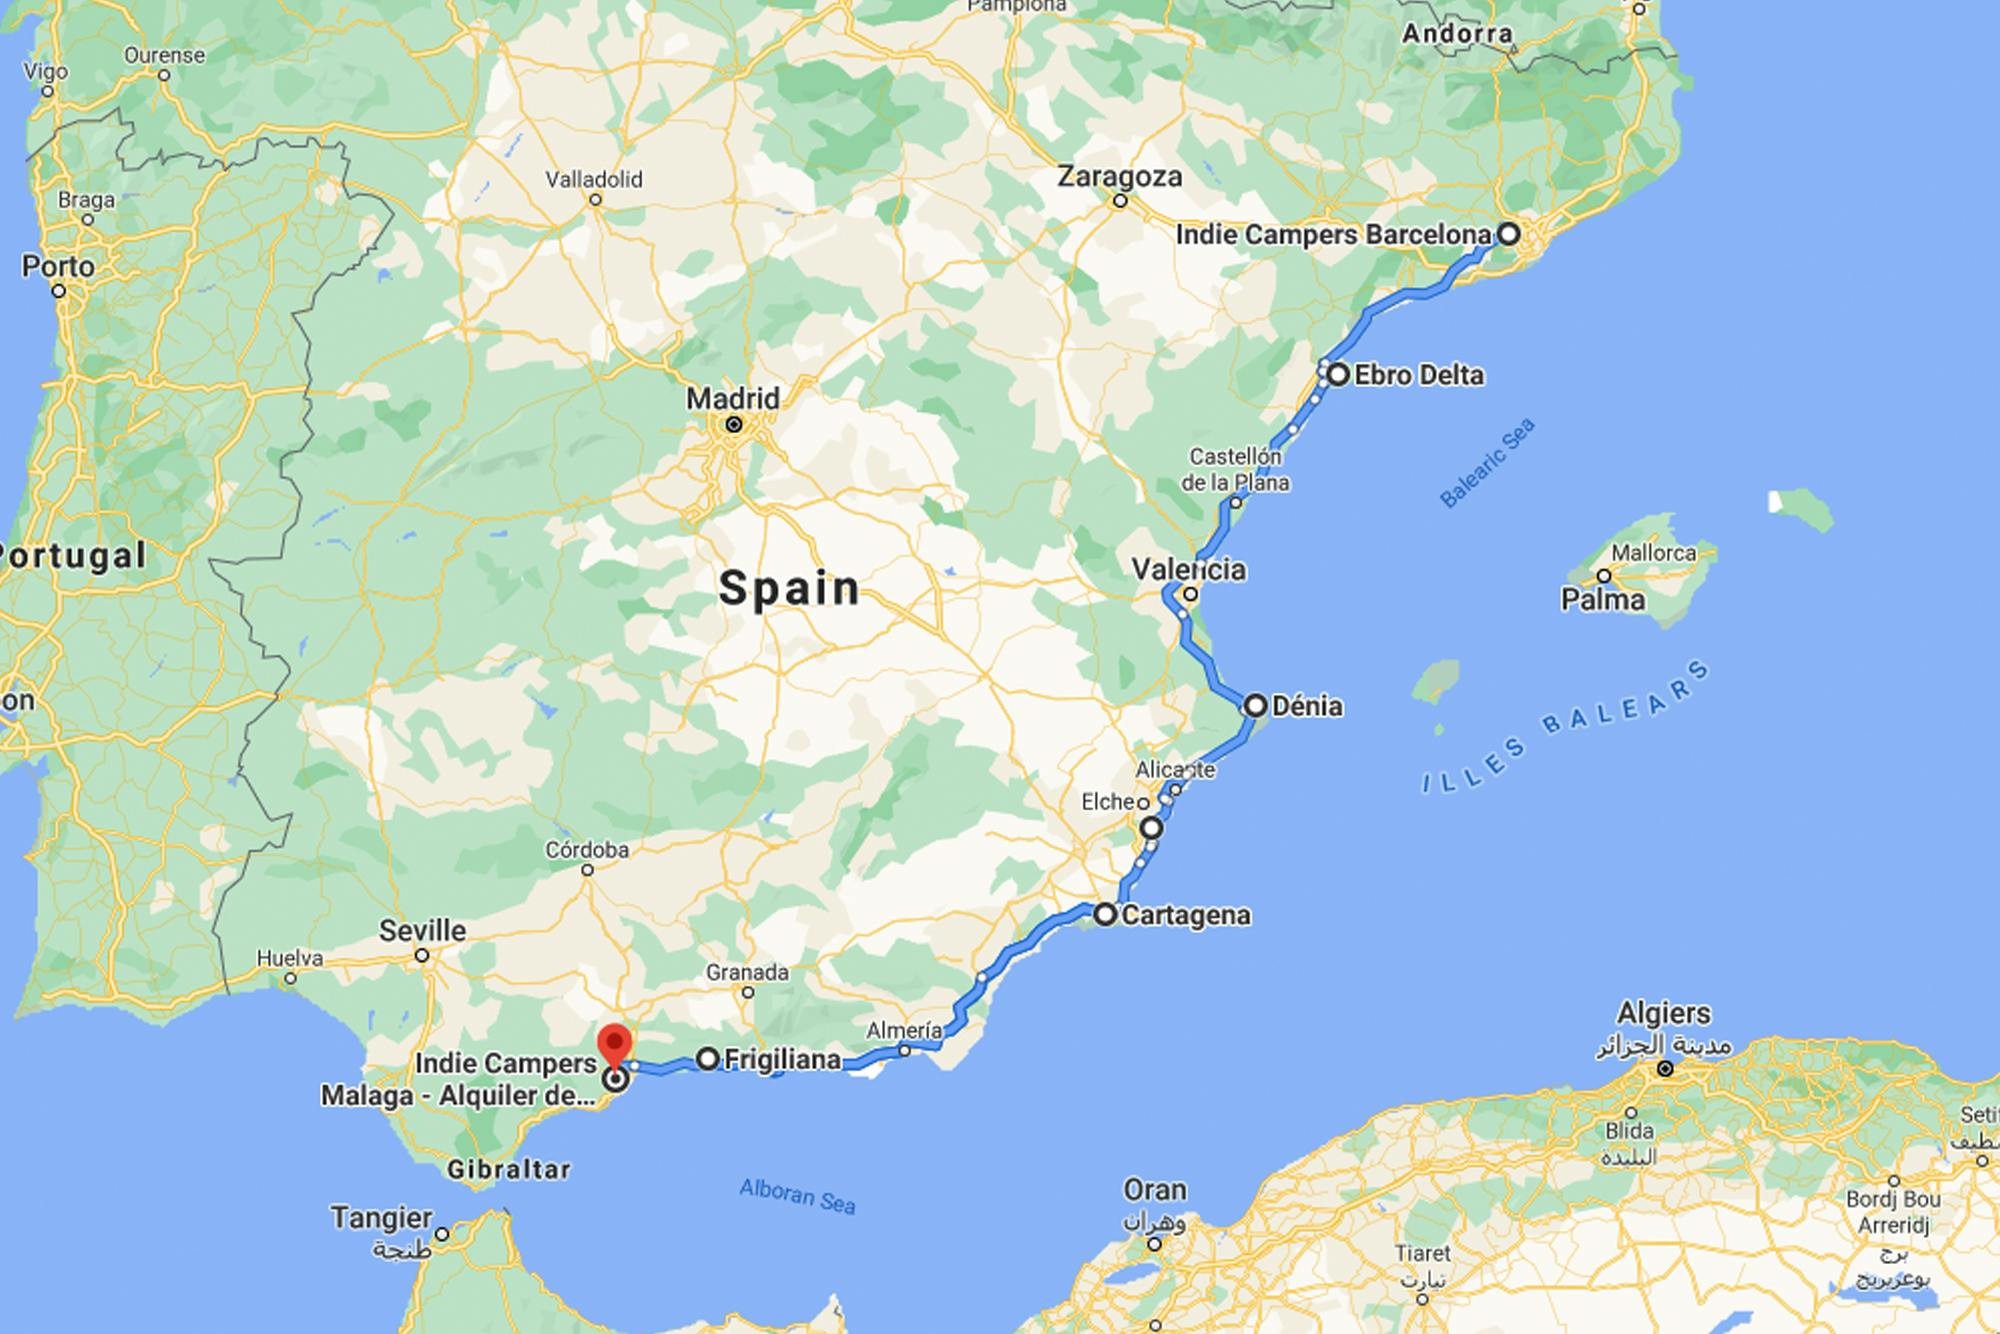 Algarve & Espanha - Google My Maps